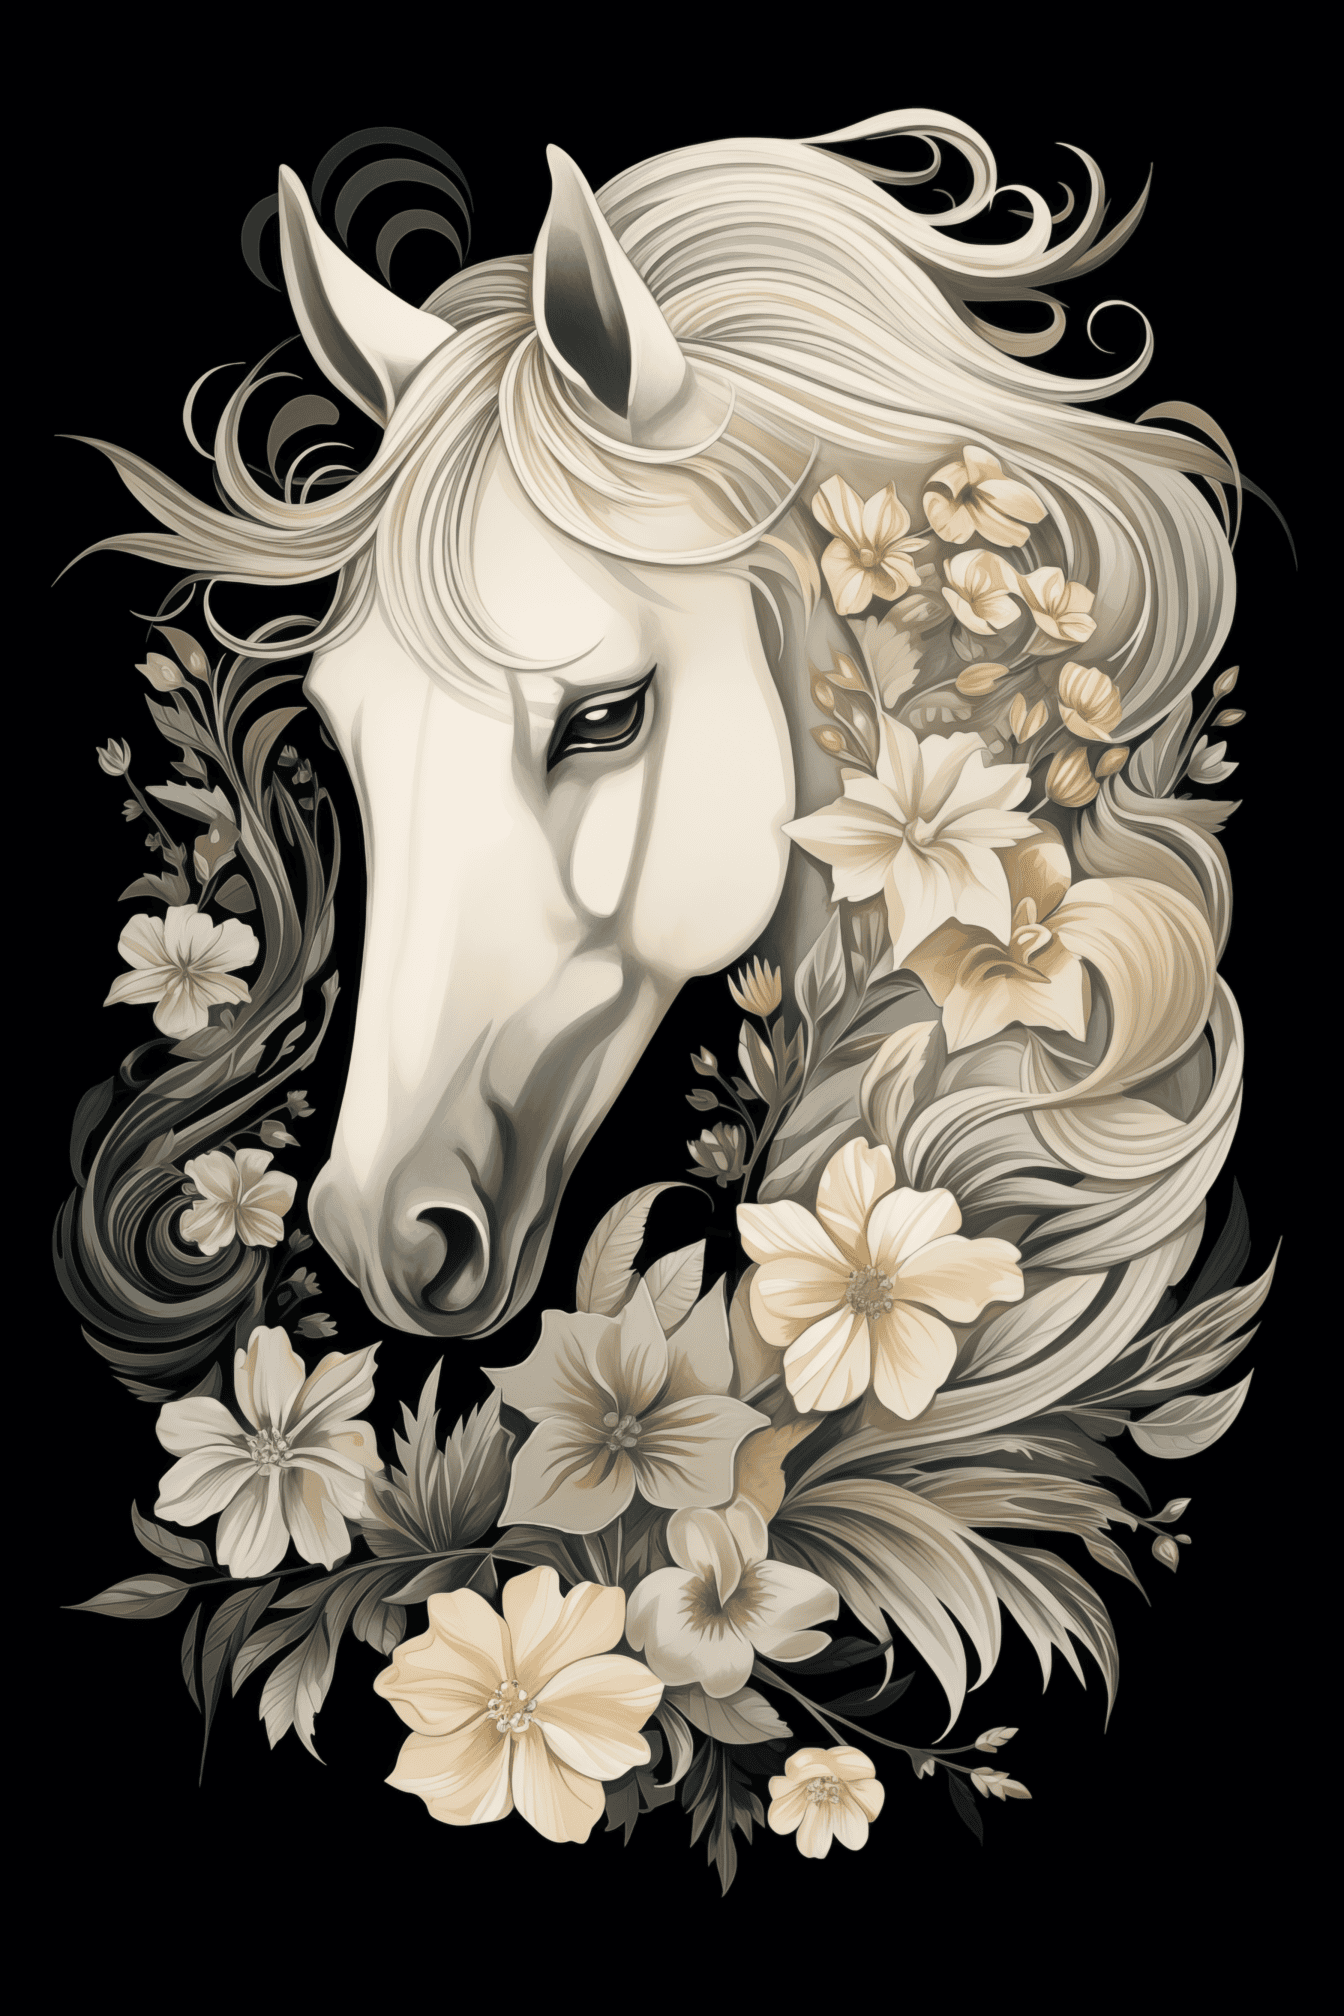 Ilustración en blanco y negro de una cabeza de caballo blanco con decoraciones florales